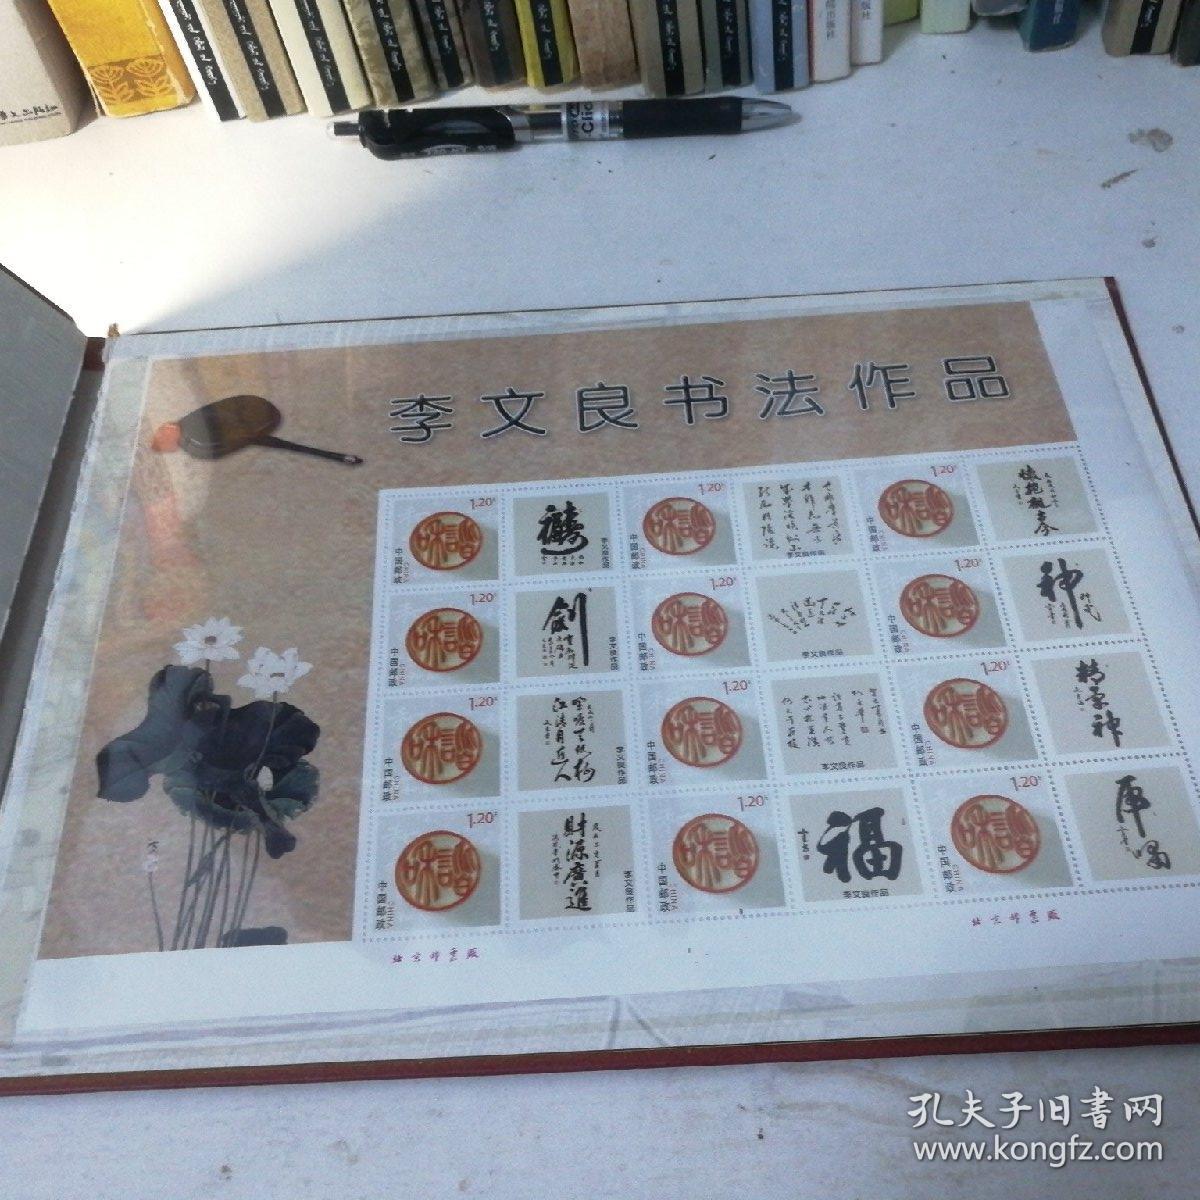 一带一路共建繁荣庆祝中华人民共和国成立70周年名家名作专题系列邮册(精装)